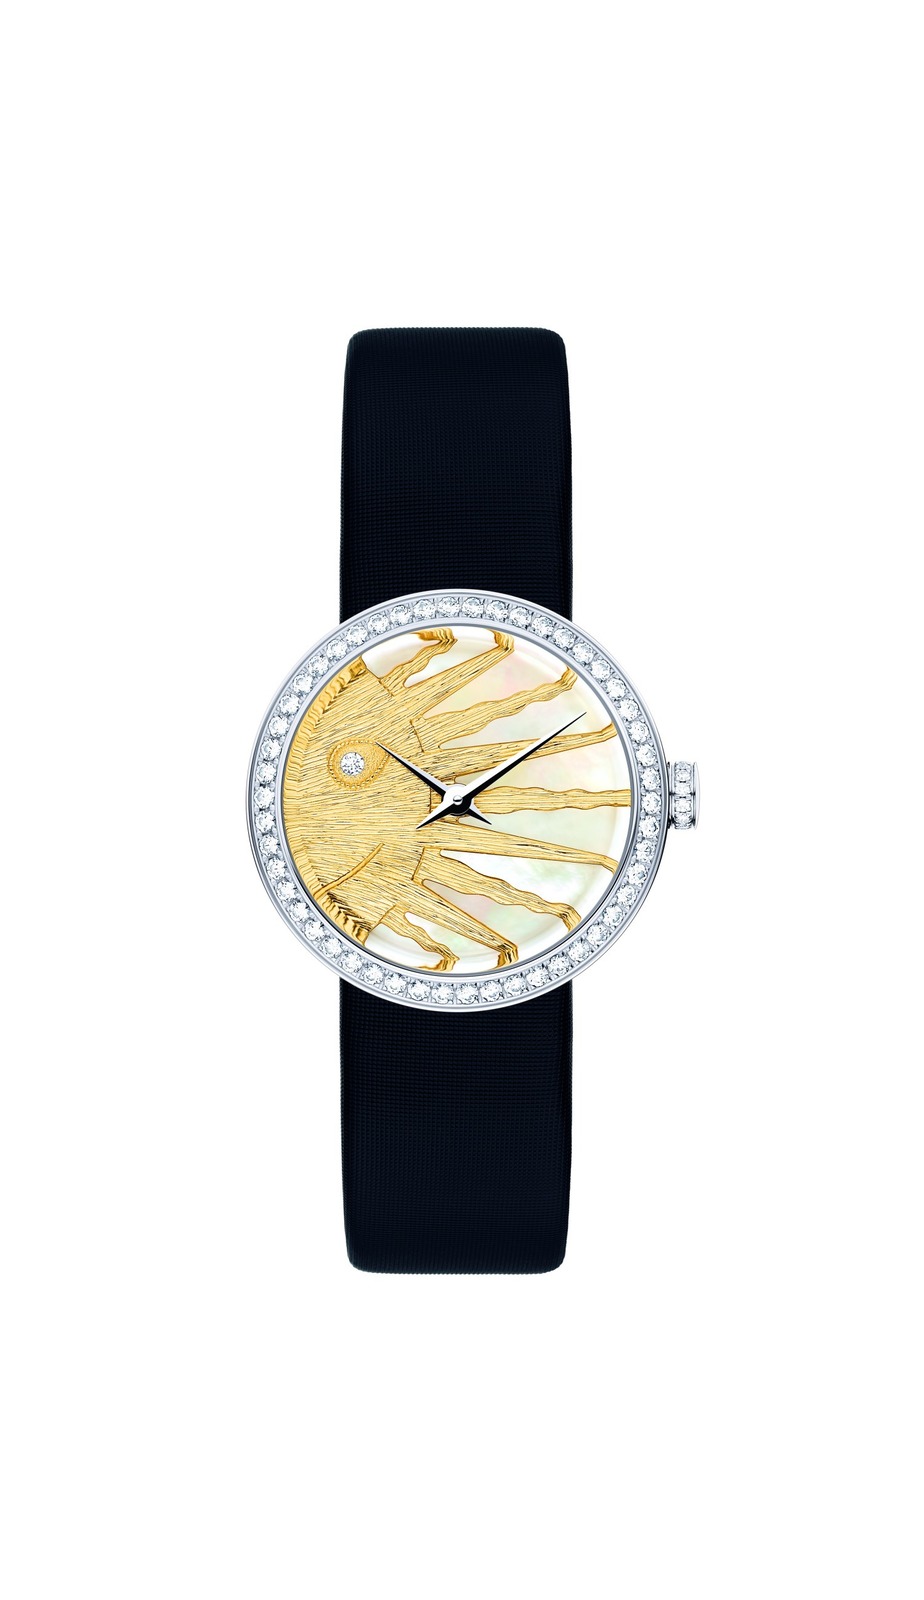 ディオールの新作腕時計“月と太陽”のジュエリーウォッチ「ラ デ ドゥ